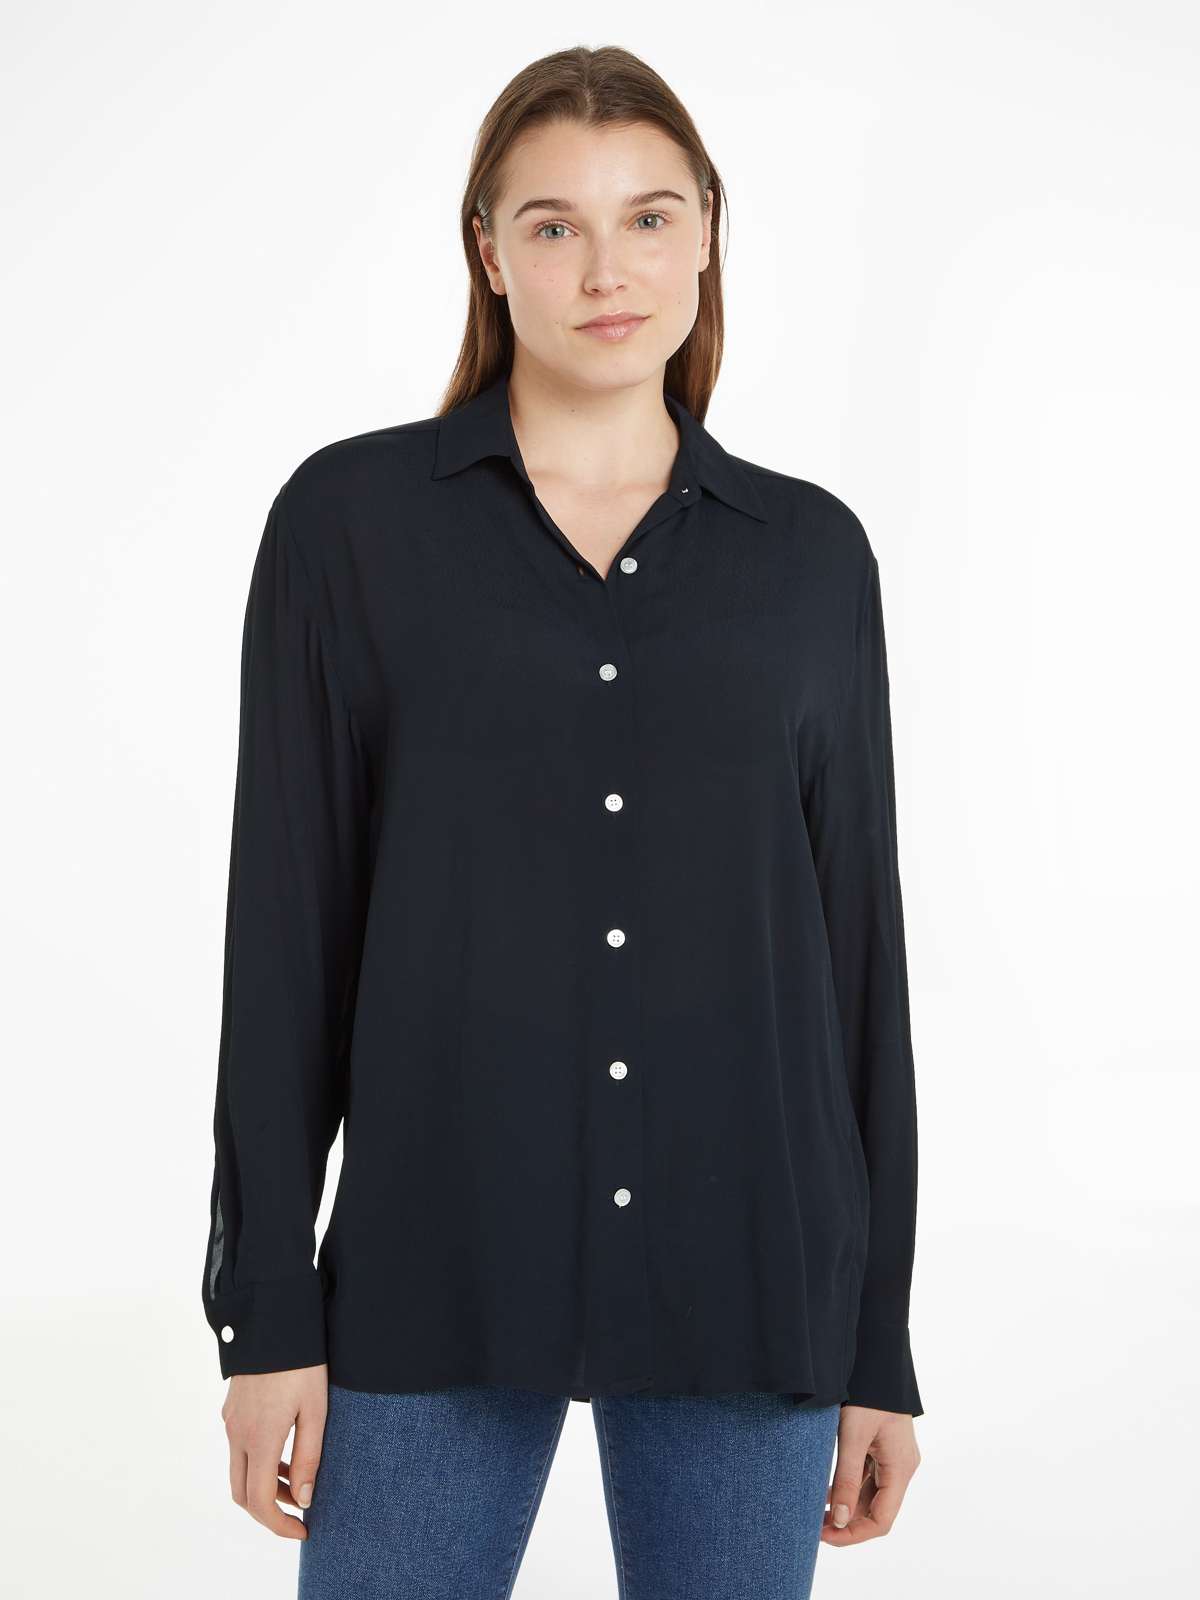 Блузка-рубашка с небольшой фирменной этикеткой на манжетах рукавов.